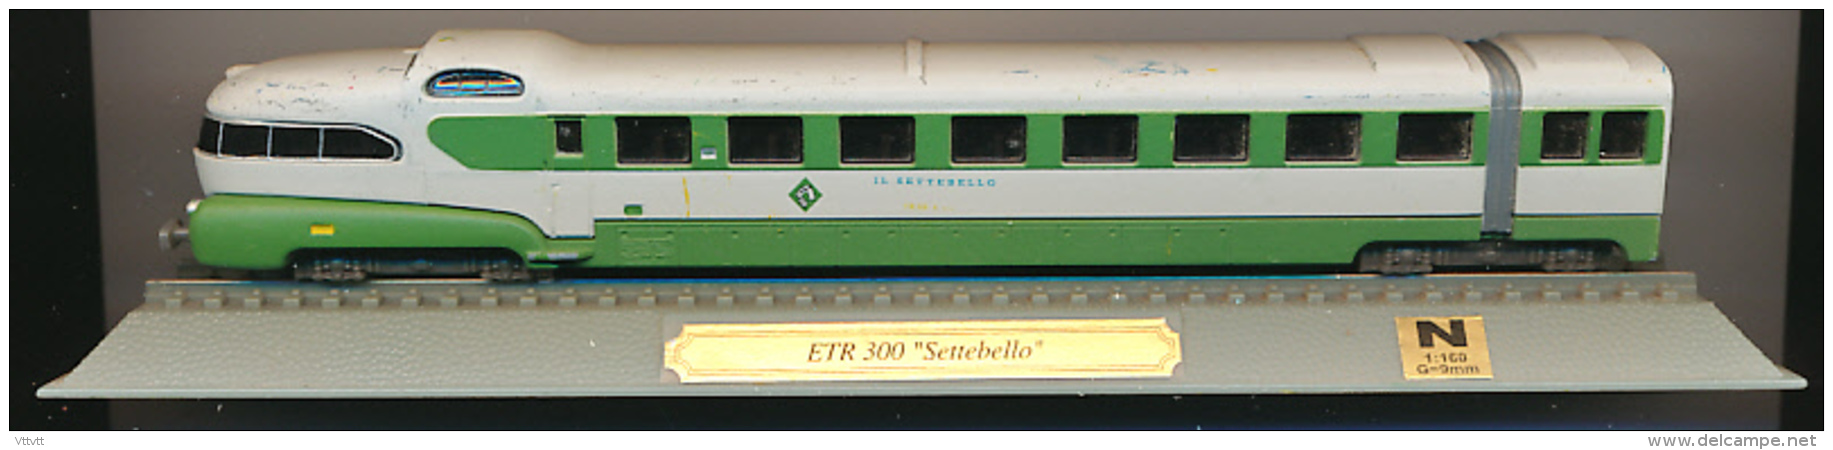 Locomotive : ETR 300 "Settebello", Echelle N 1/160, G = 9 Mm, Italy, Italie - Loks